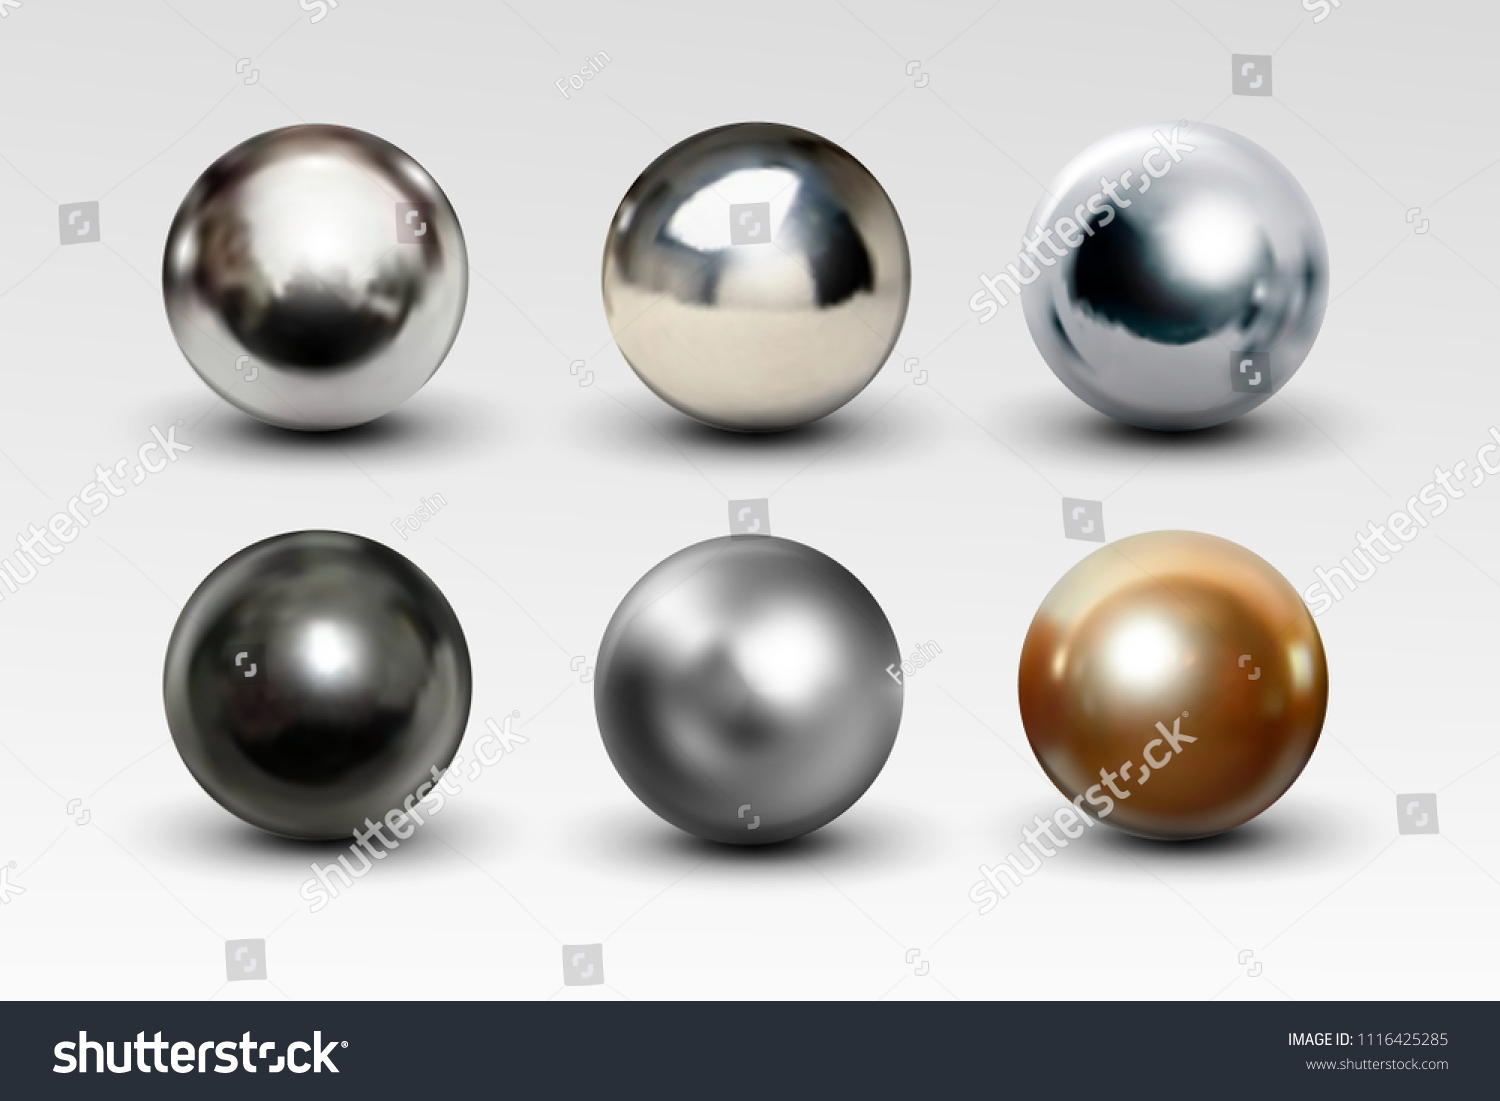 Звук металлических шаров. Хромированный металлический шар. Металлический шарик 3д. Хромированный шарик металлический. Металлический шарик на прозрачном фоне.